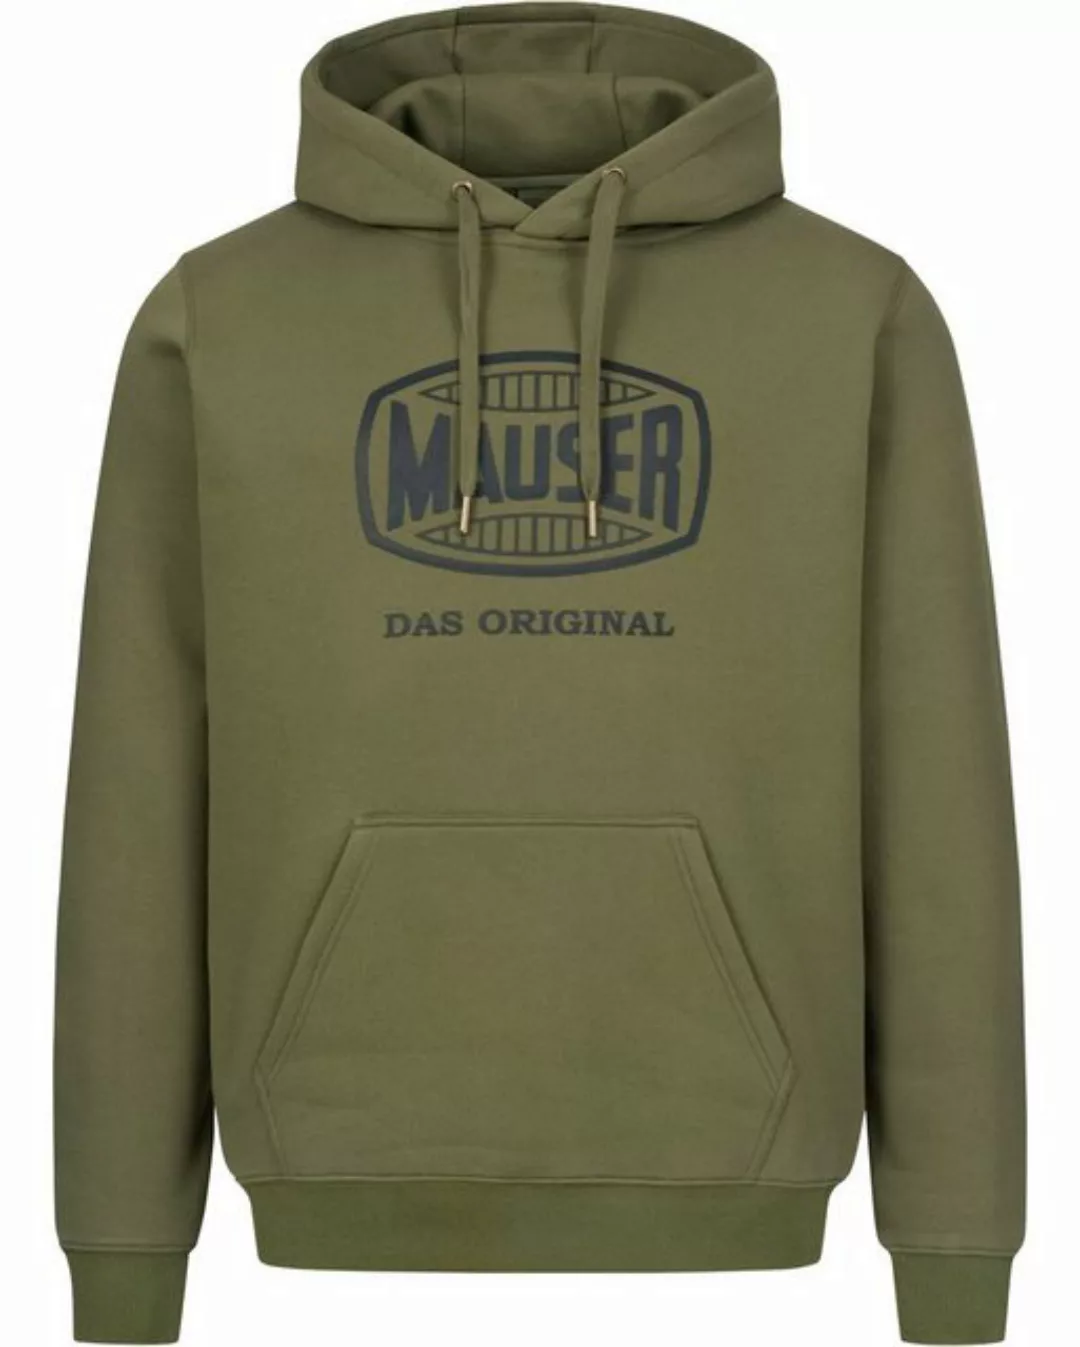 MAUSER Sweatshirt Hoodie günstig online kaufen